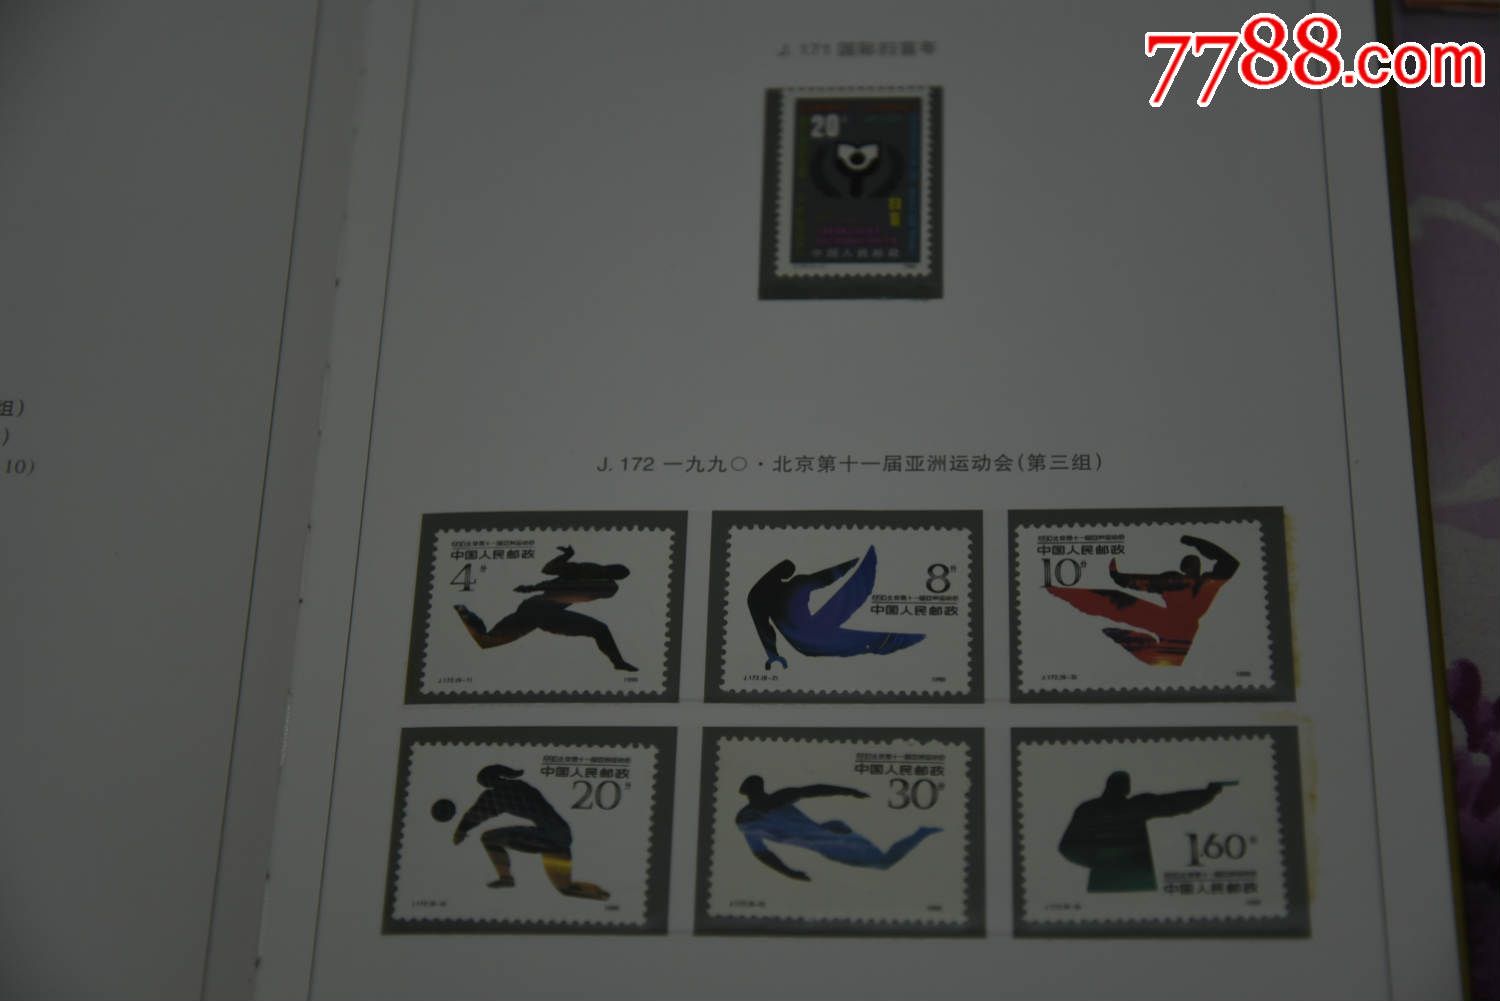 1990邮票年册、马年、-价格:350元-se335658